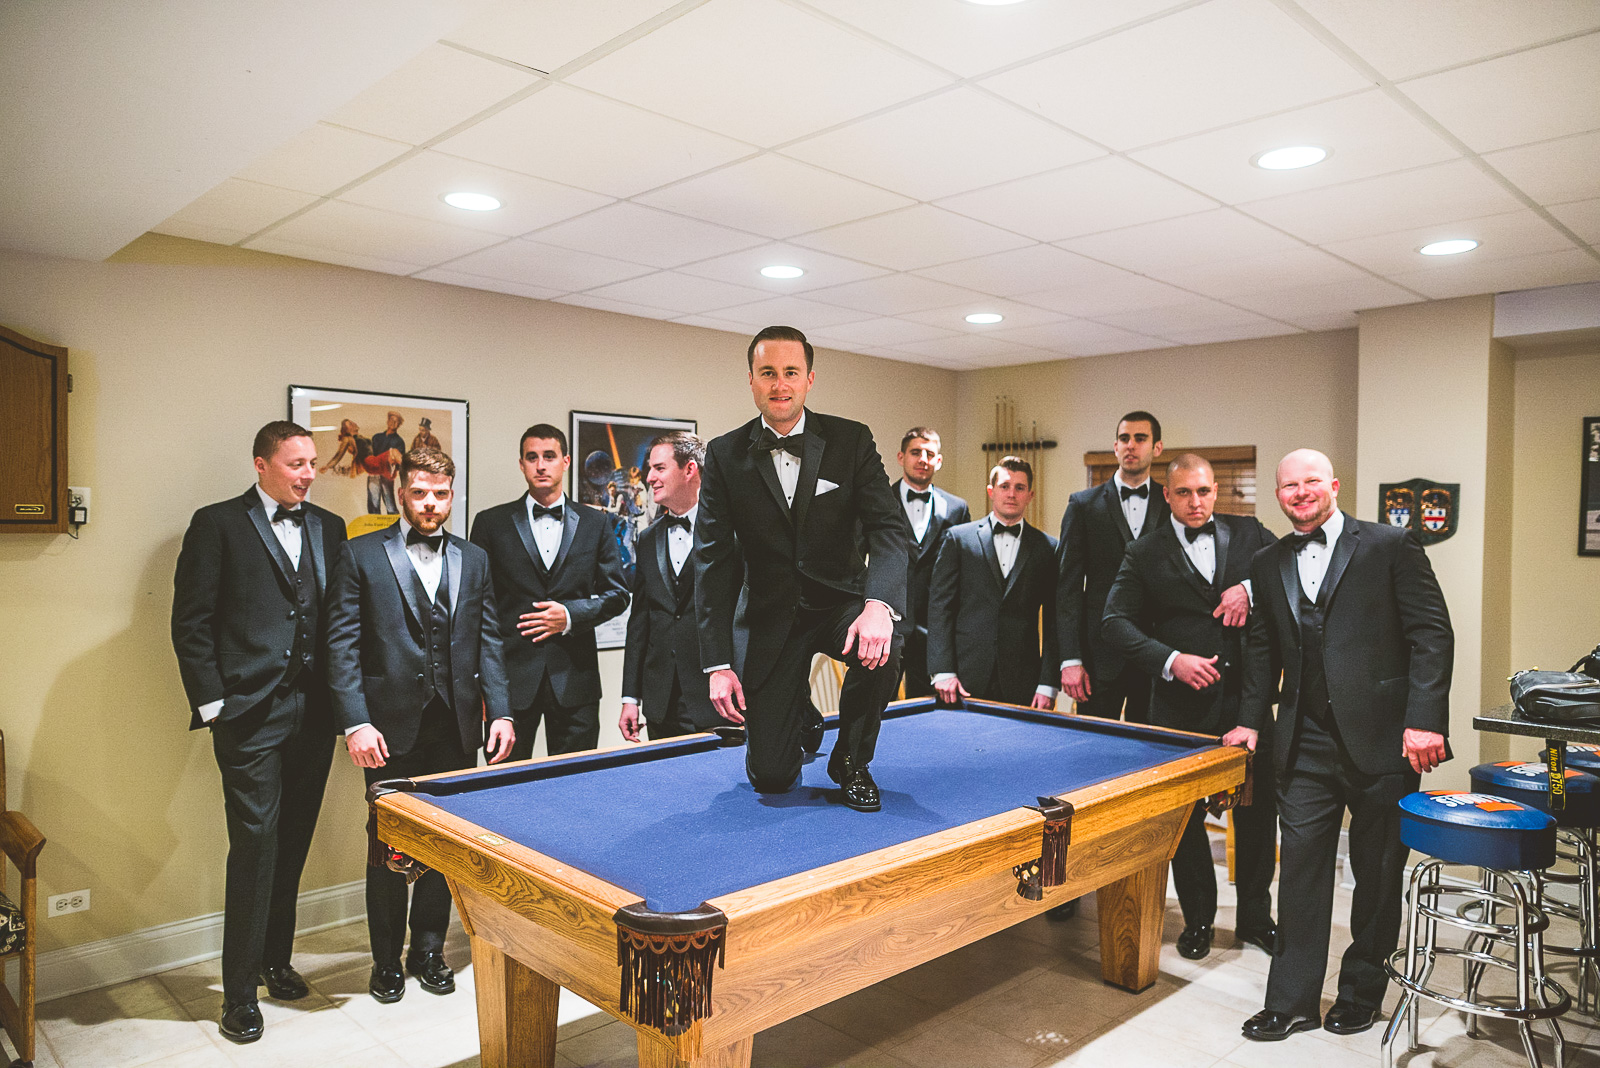 20 groomsmen on pool table